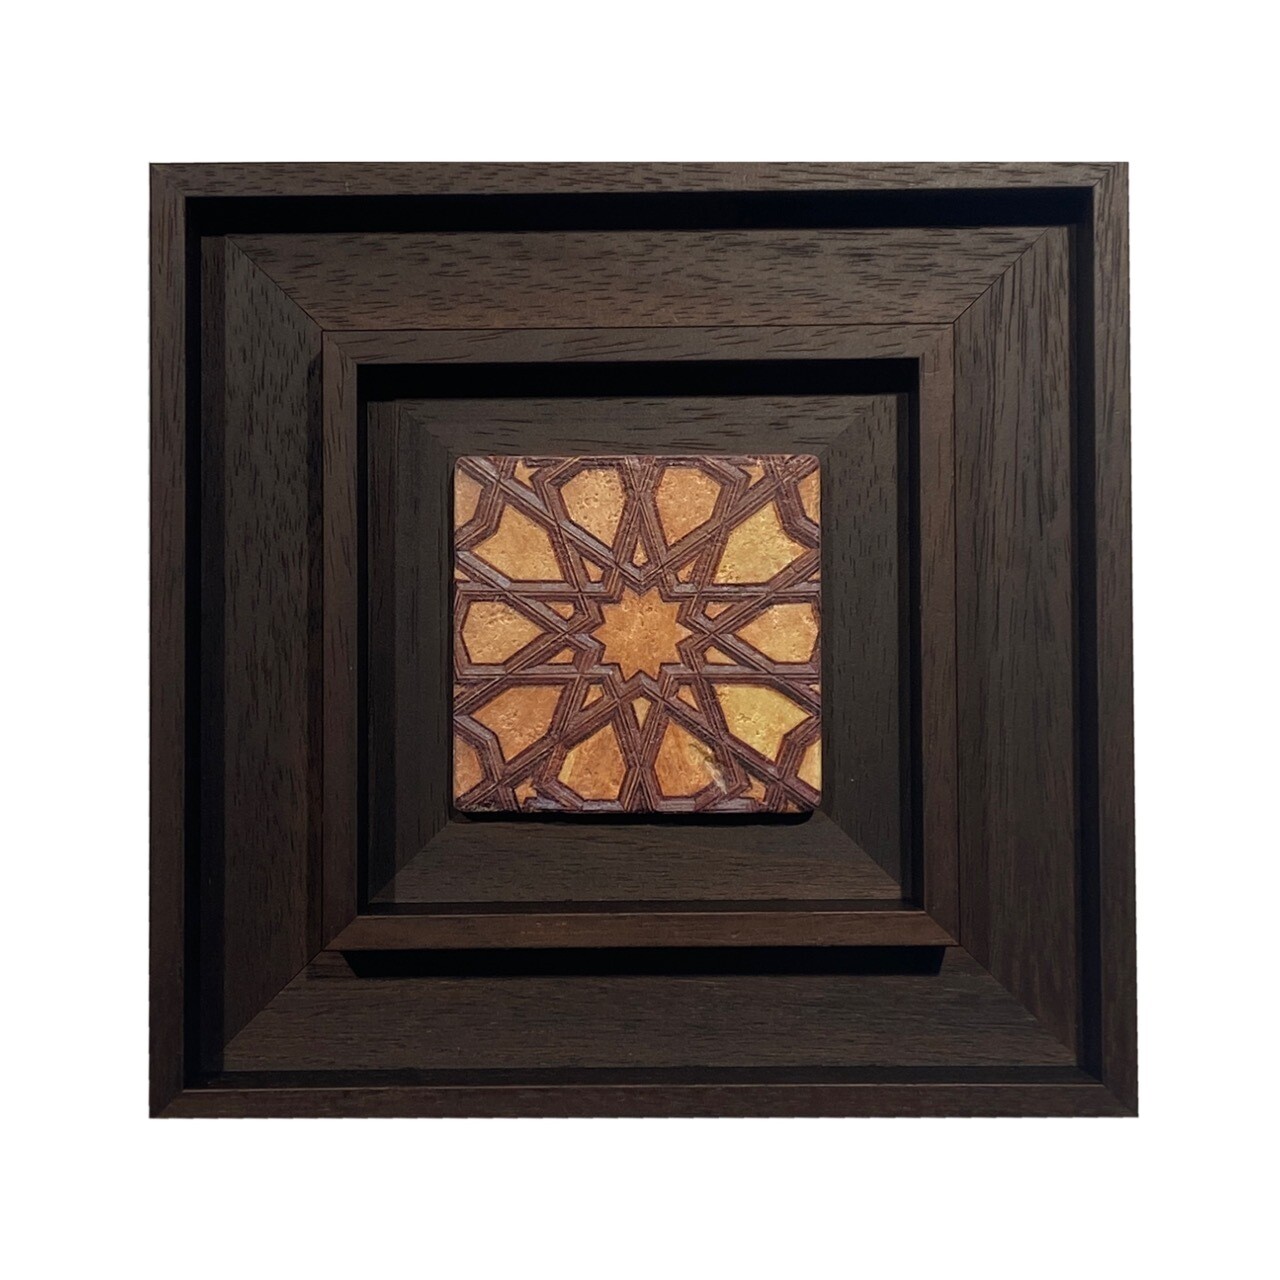 The Grand Doors of Bursa Geometric Frame in Frame Stone Tile